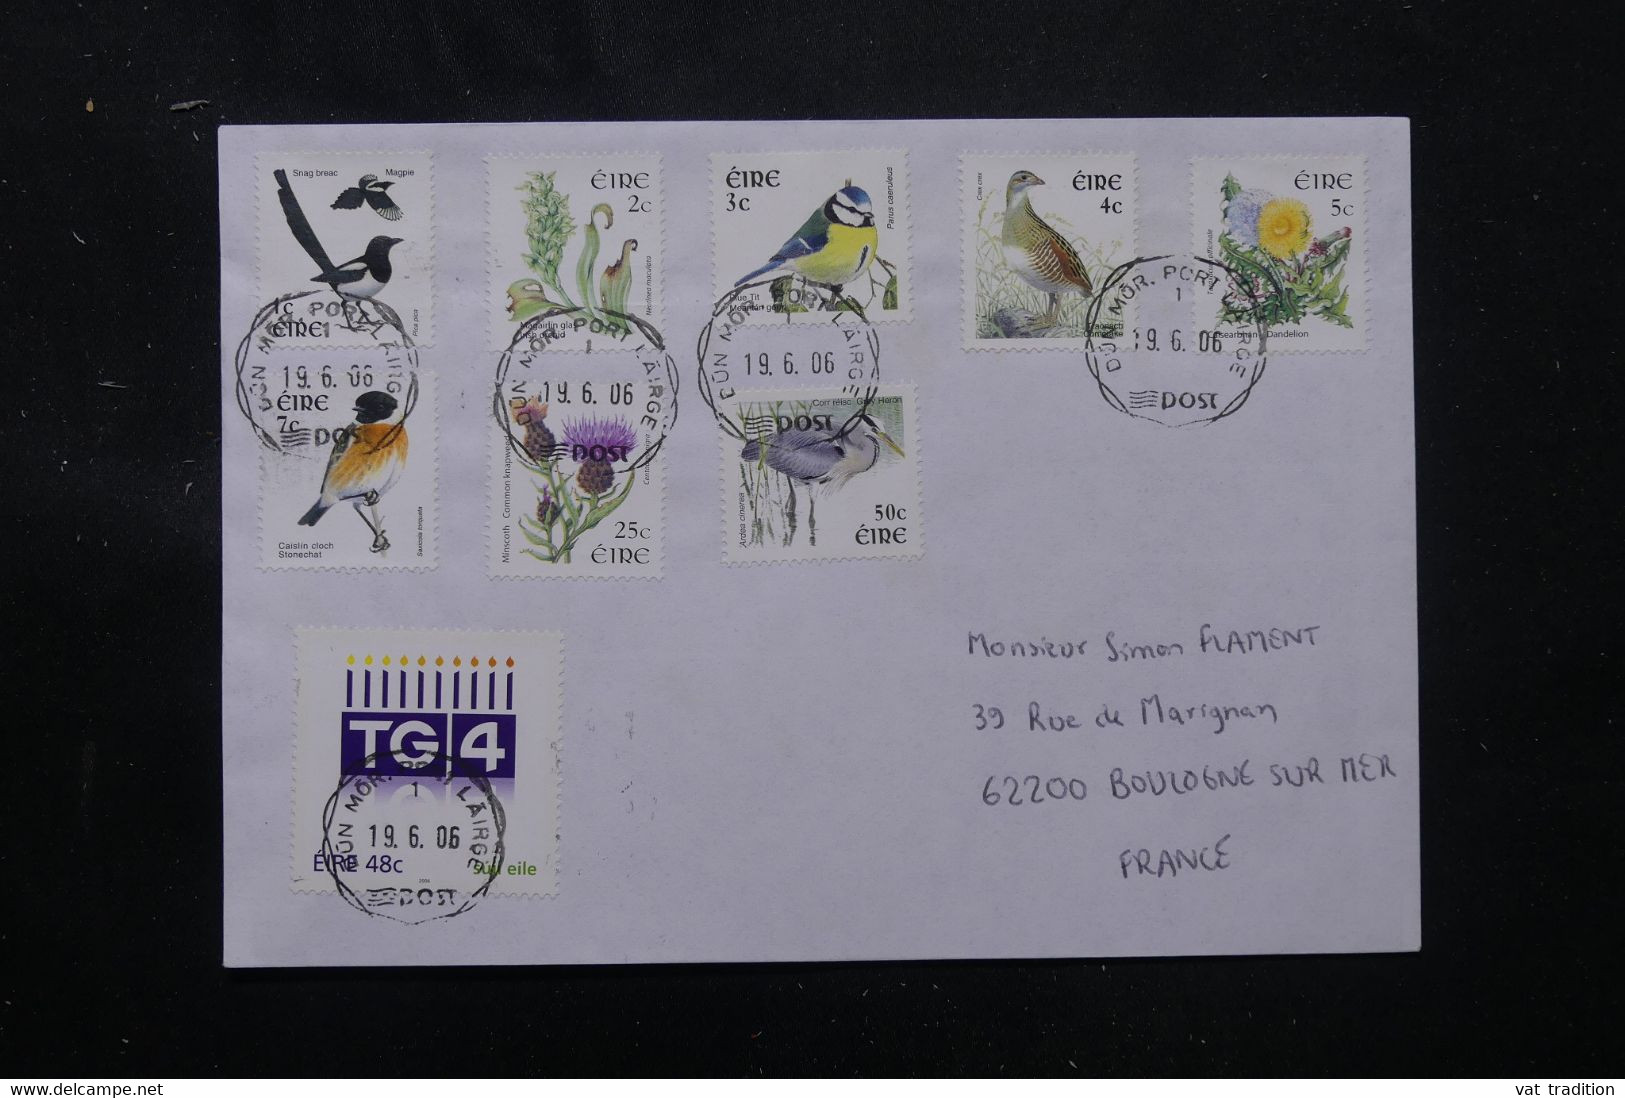 IRLANDE - Enveloppe Pour La France En 2006, Affranchissement Oiseaux - L 76292 - Briefe U. Dokumente